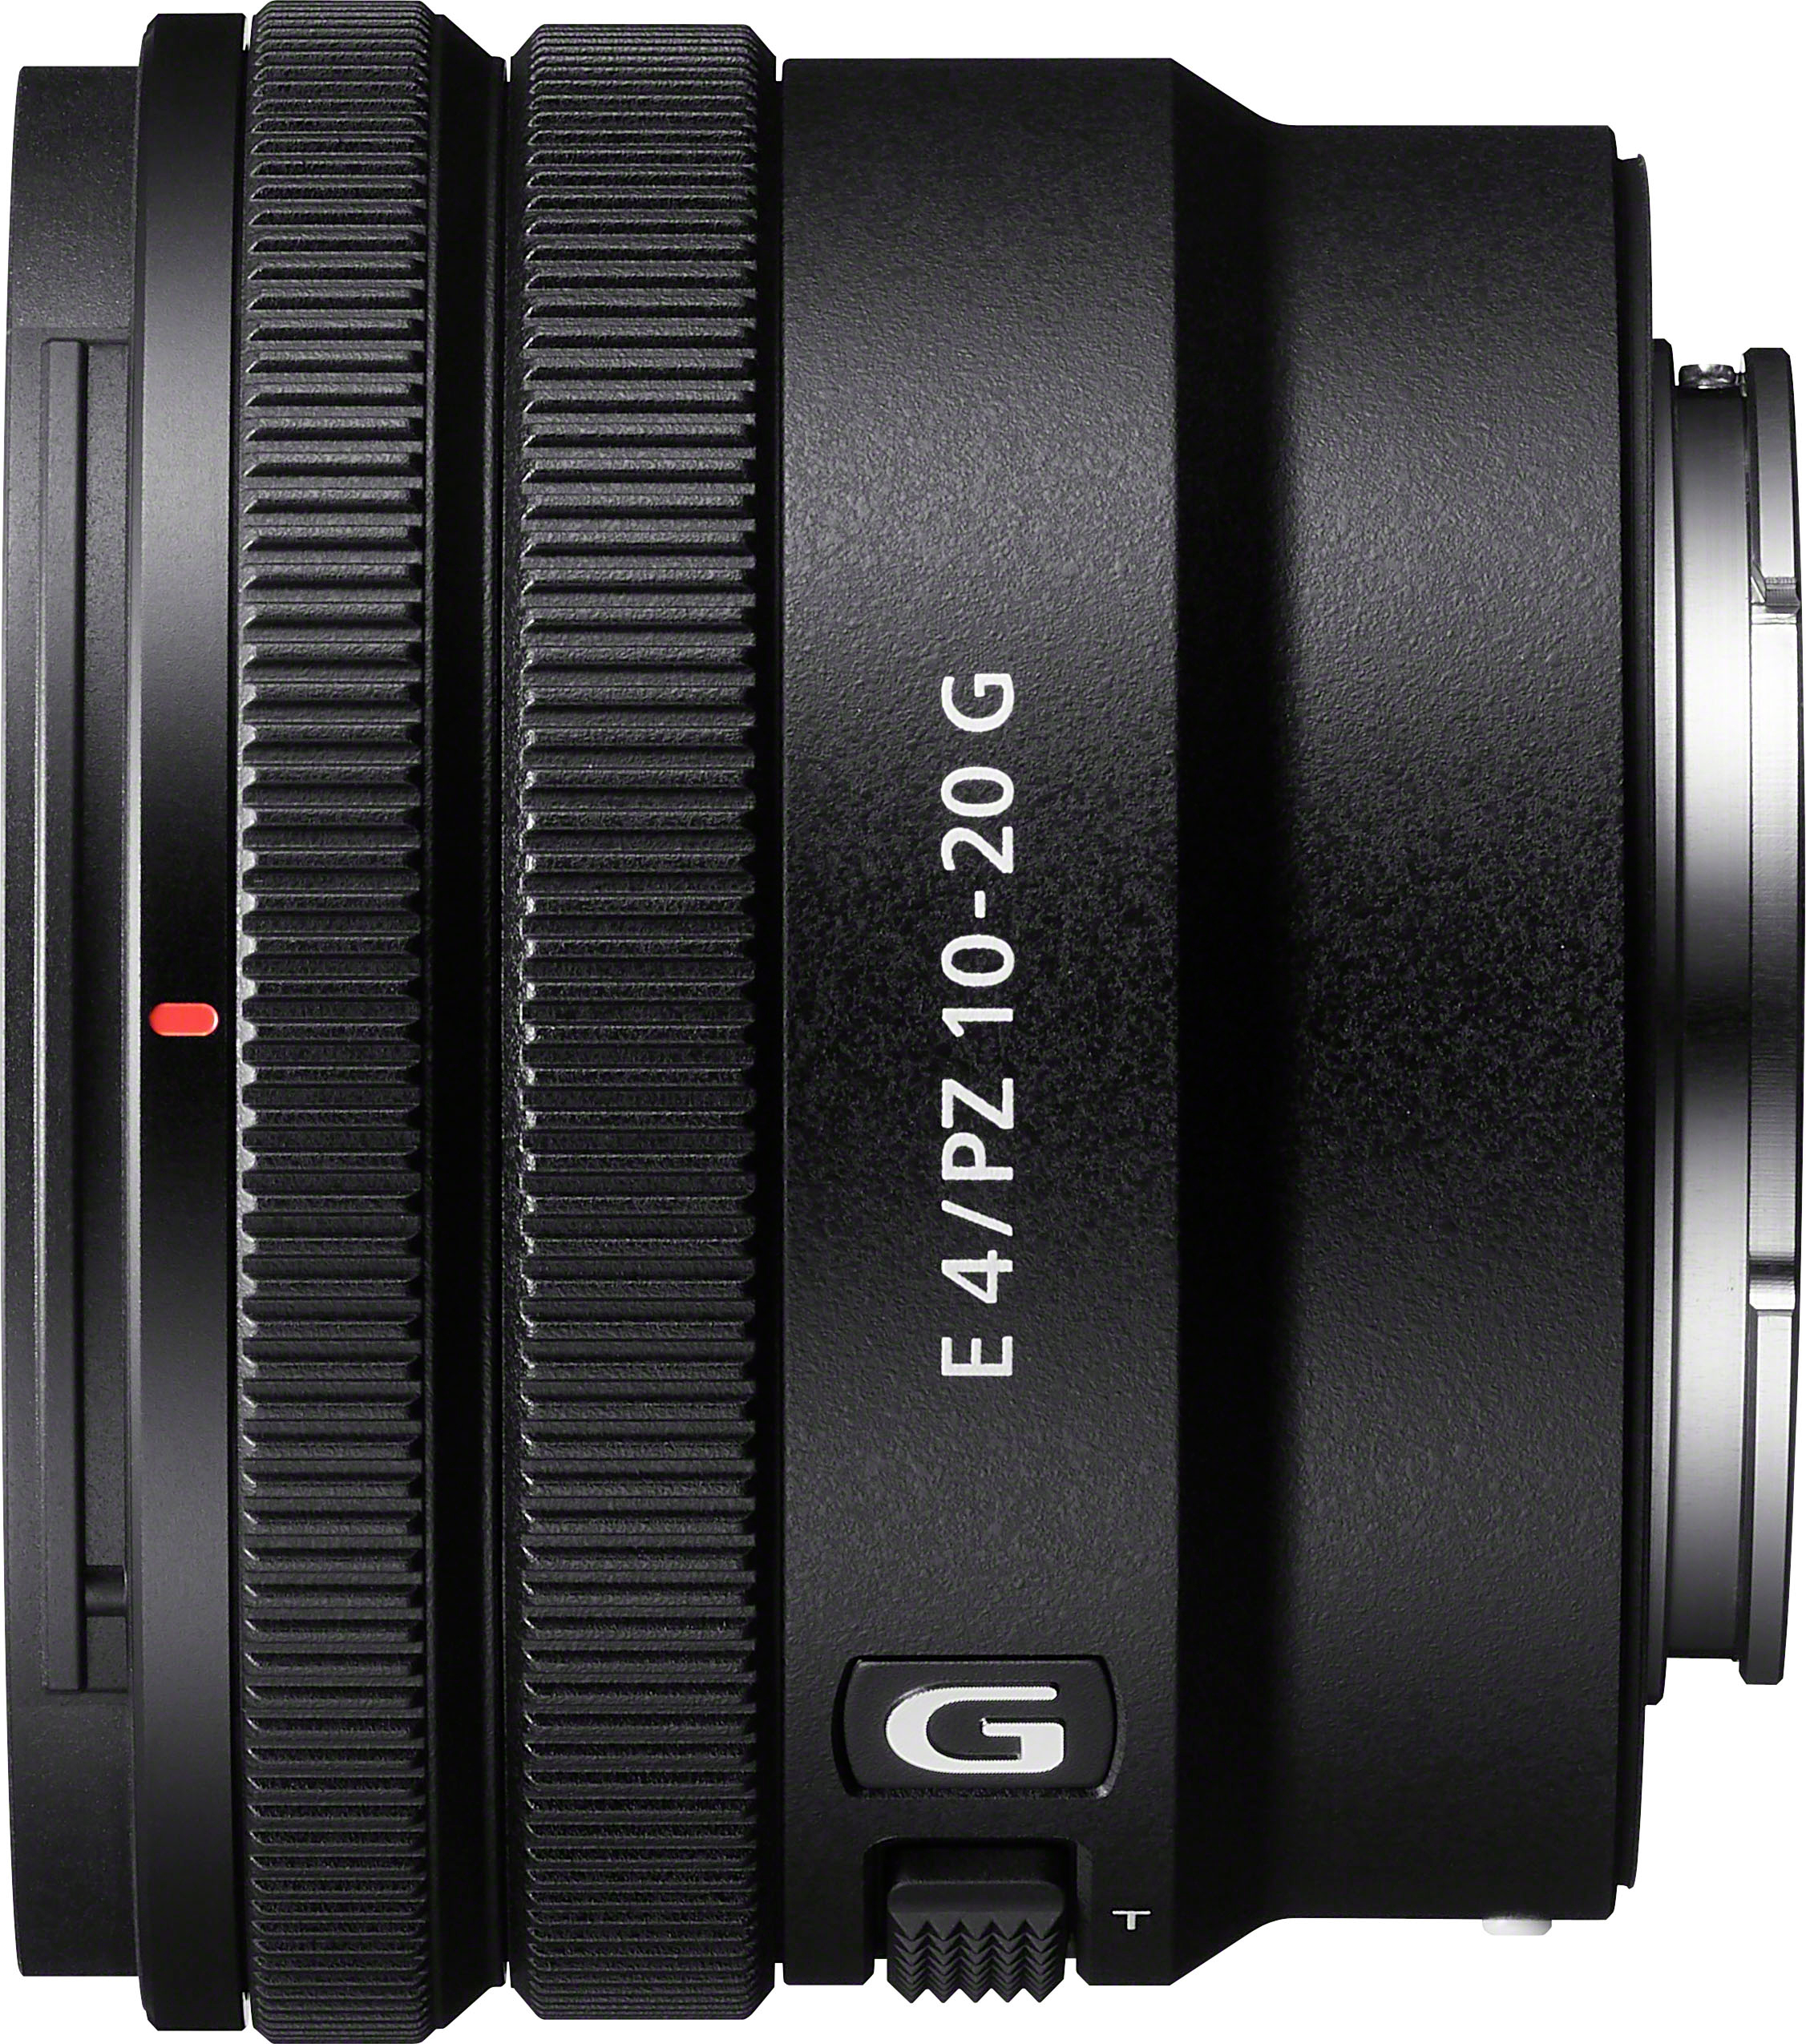 Sony E PZ 10-20mm F4 G APS-C constant aperture power zoom lens G 